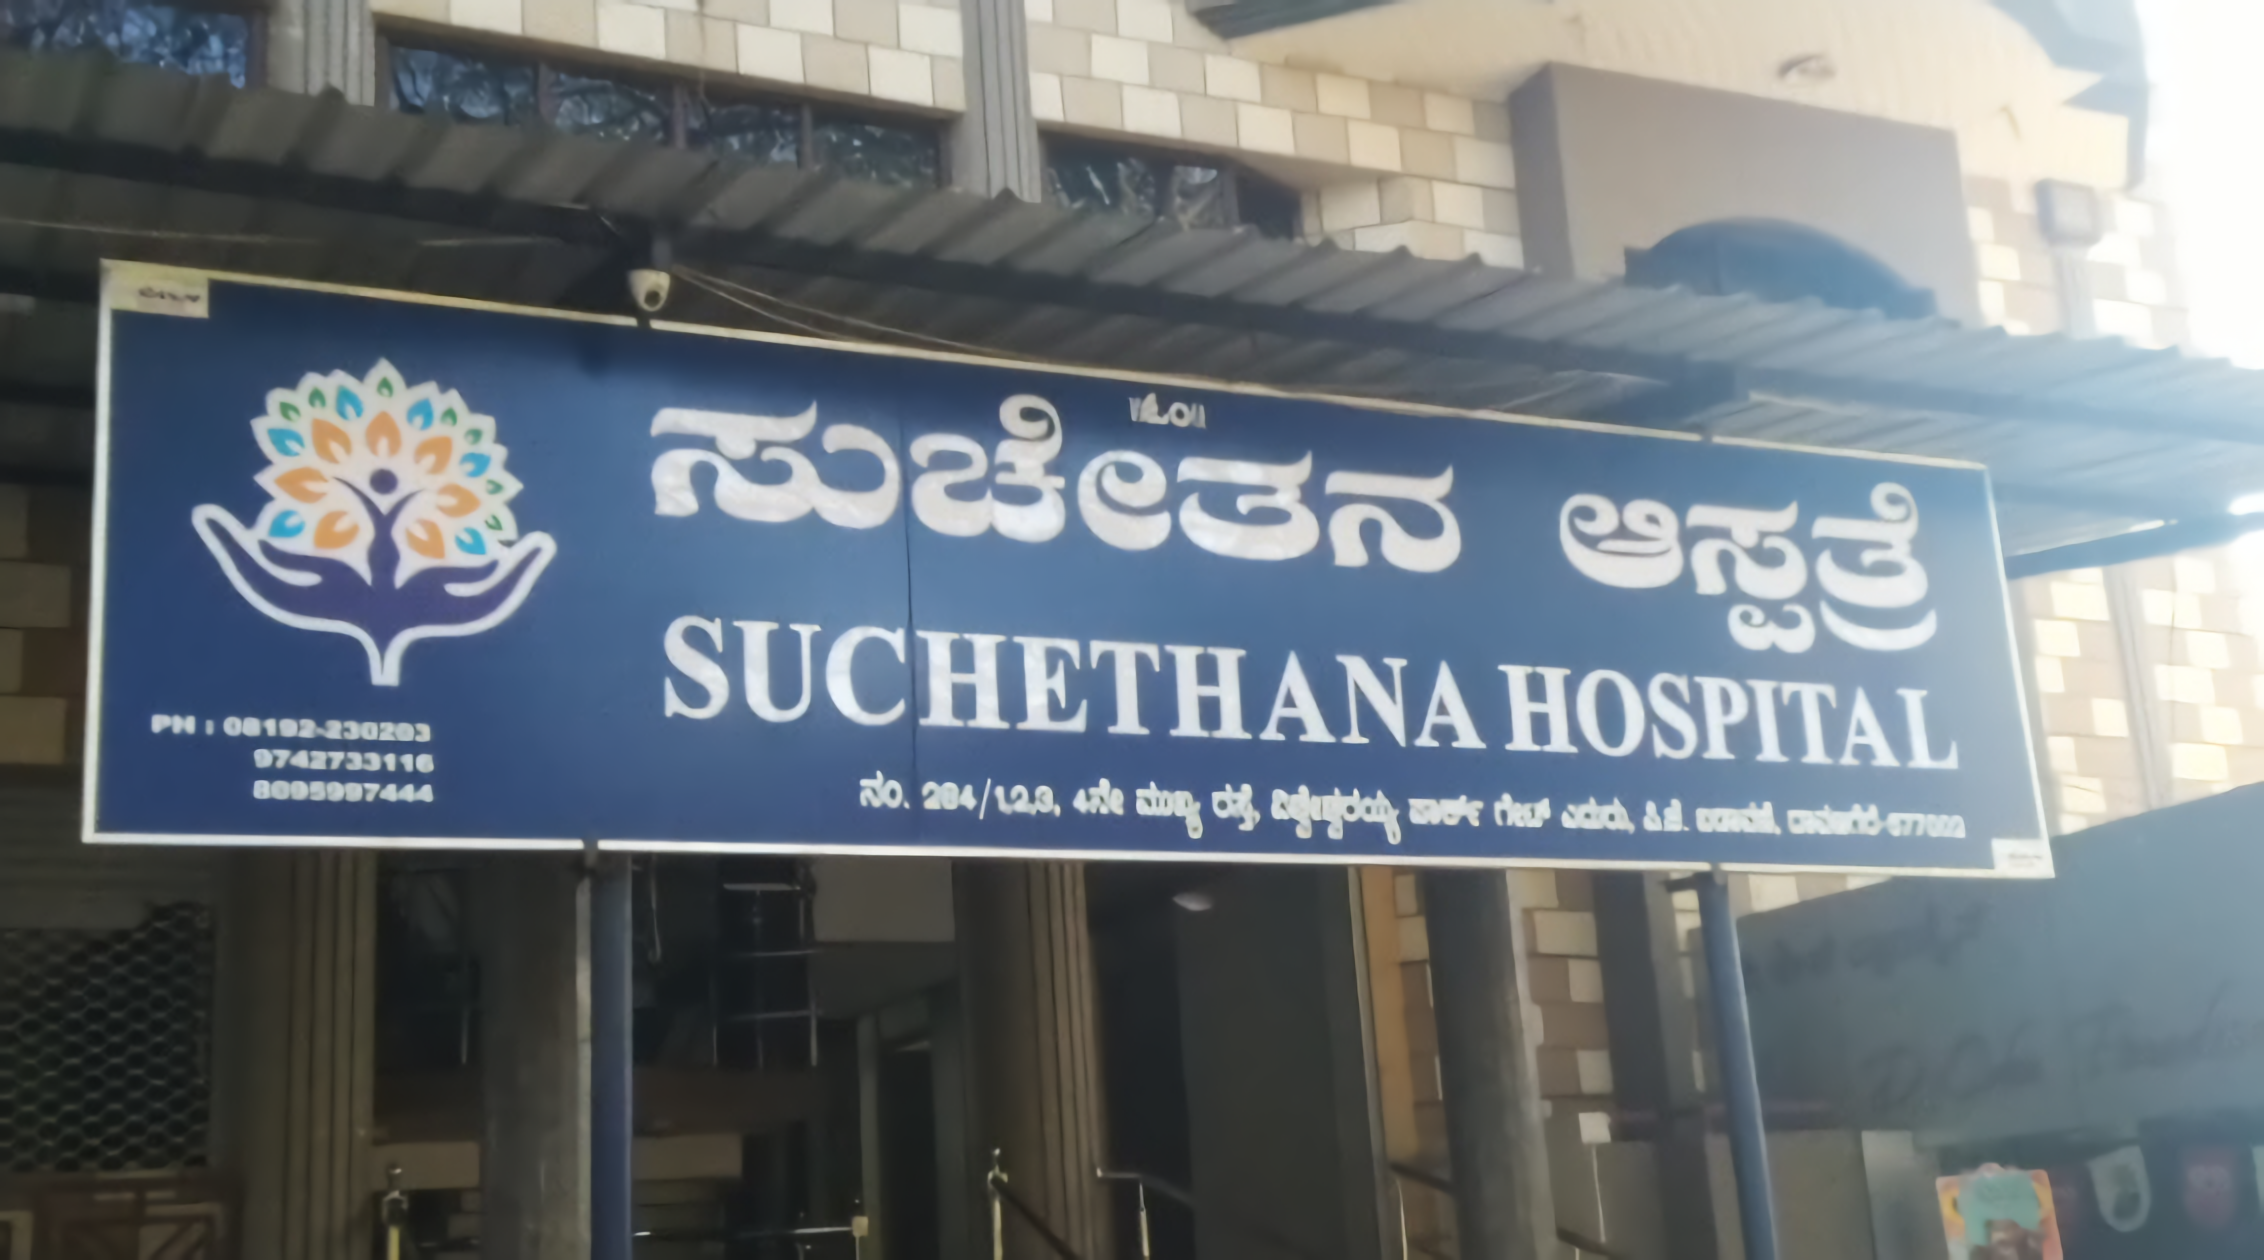 Suchethana Hospital